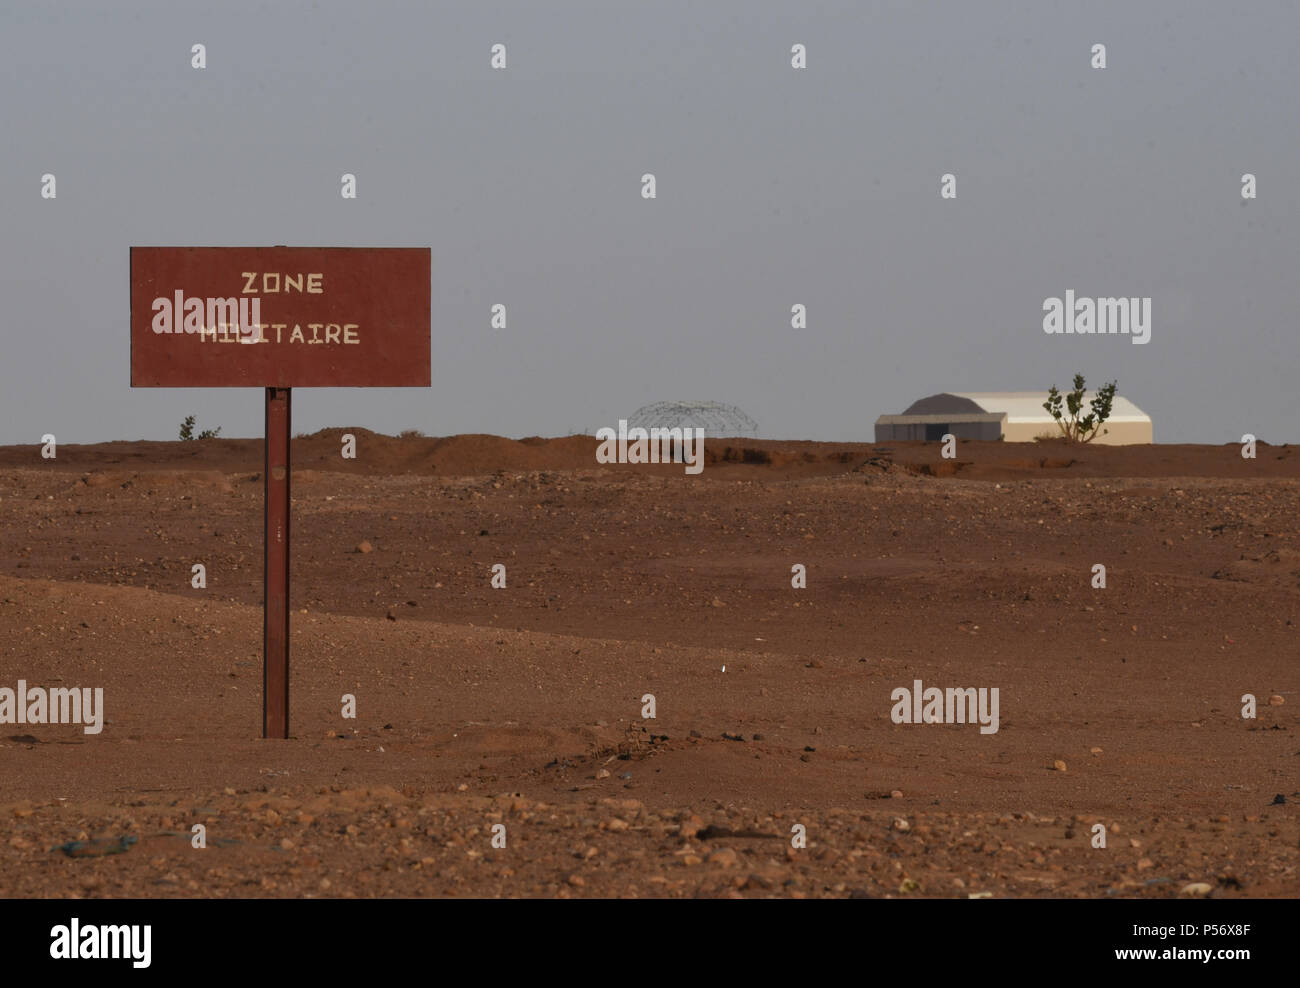 Februar 6, 2018 - Agadez, Niger: ein Schild mit der Aufschrift 'Military Zone', mit der US-drohne Basis im Hintergrund sichtbar. Fotos pries de Loin montrant l'installation d'une nouvelle Base militaire de americaine Drohnen ein Proximite d'Agadez. *** Keine VERKÄUFE IN DEN FRANZÖSISCHEN MEDIEN *** Stockfoto